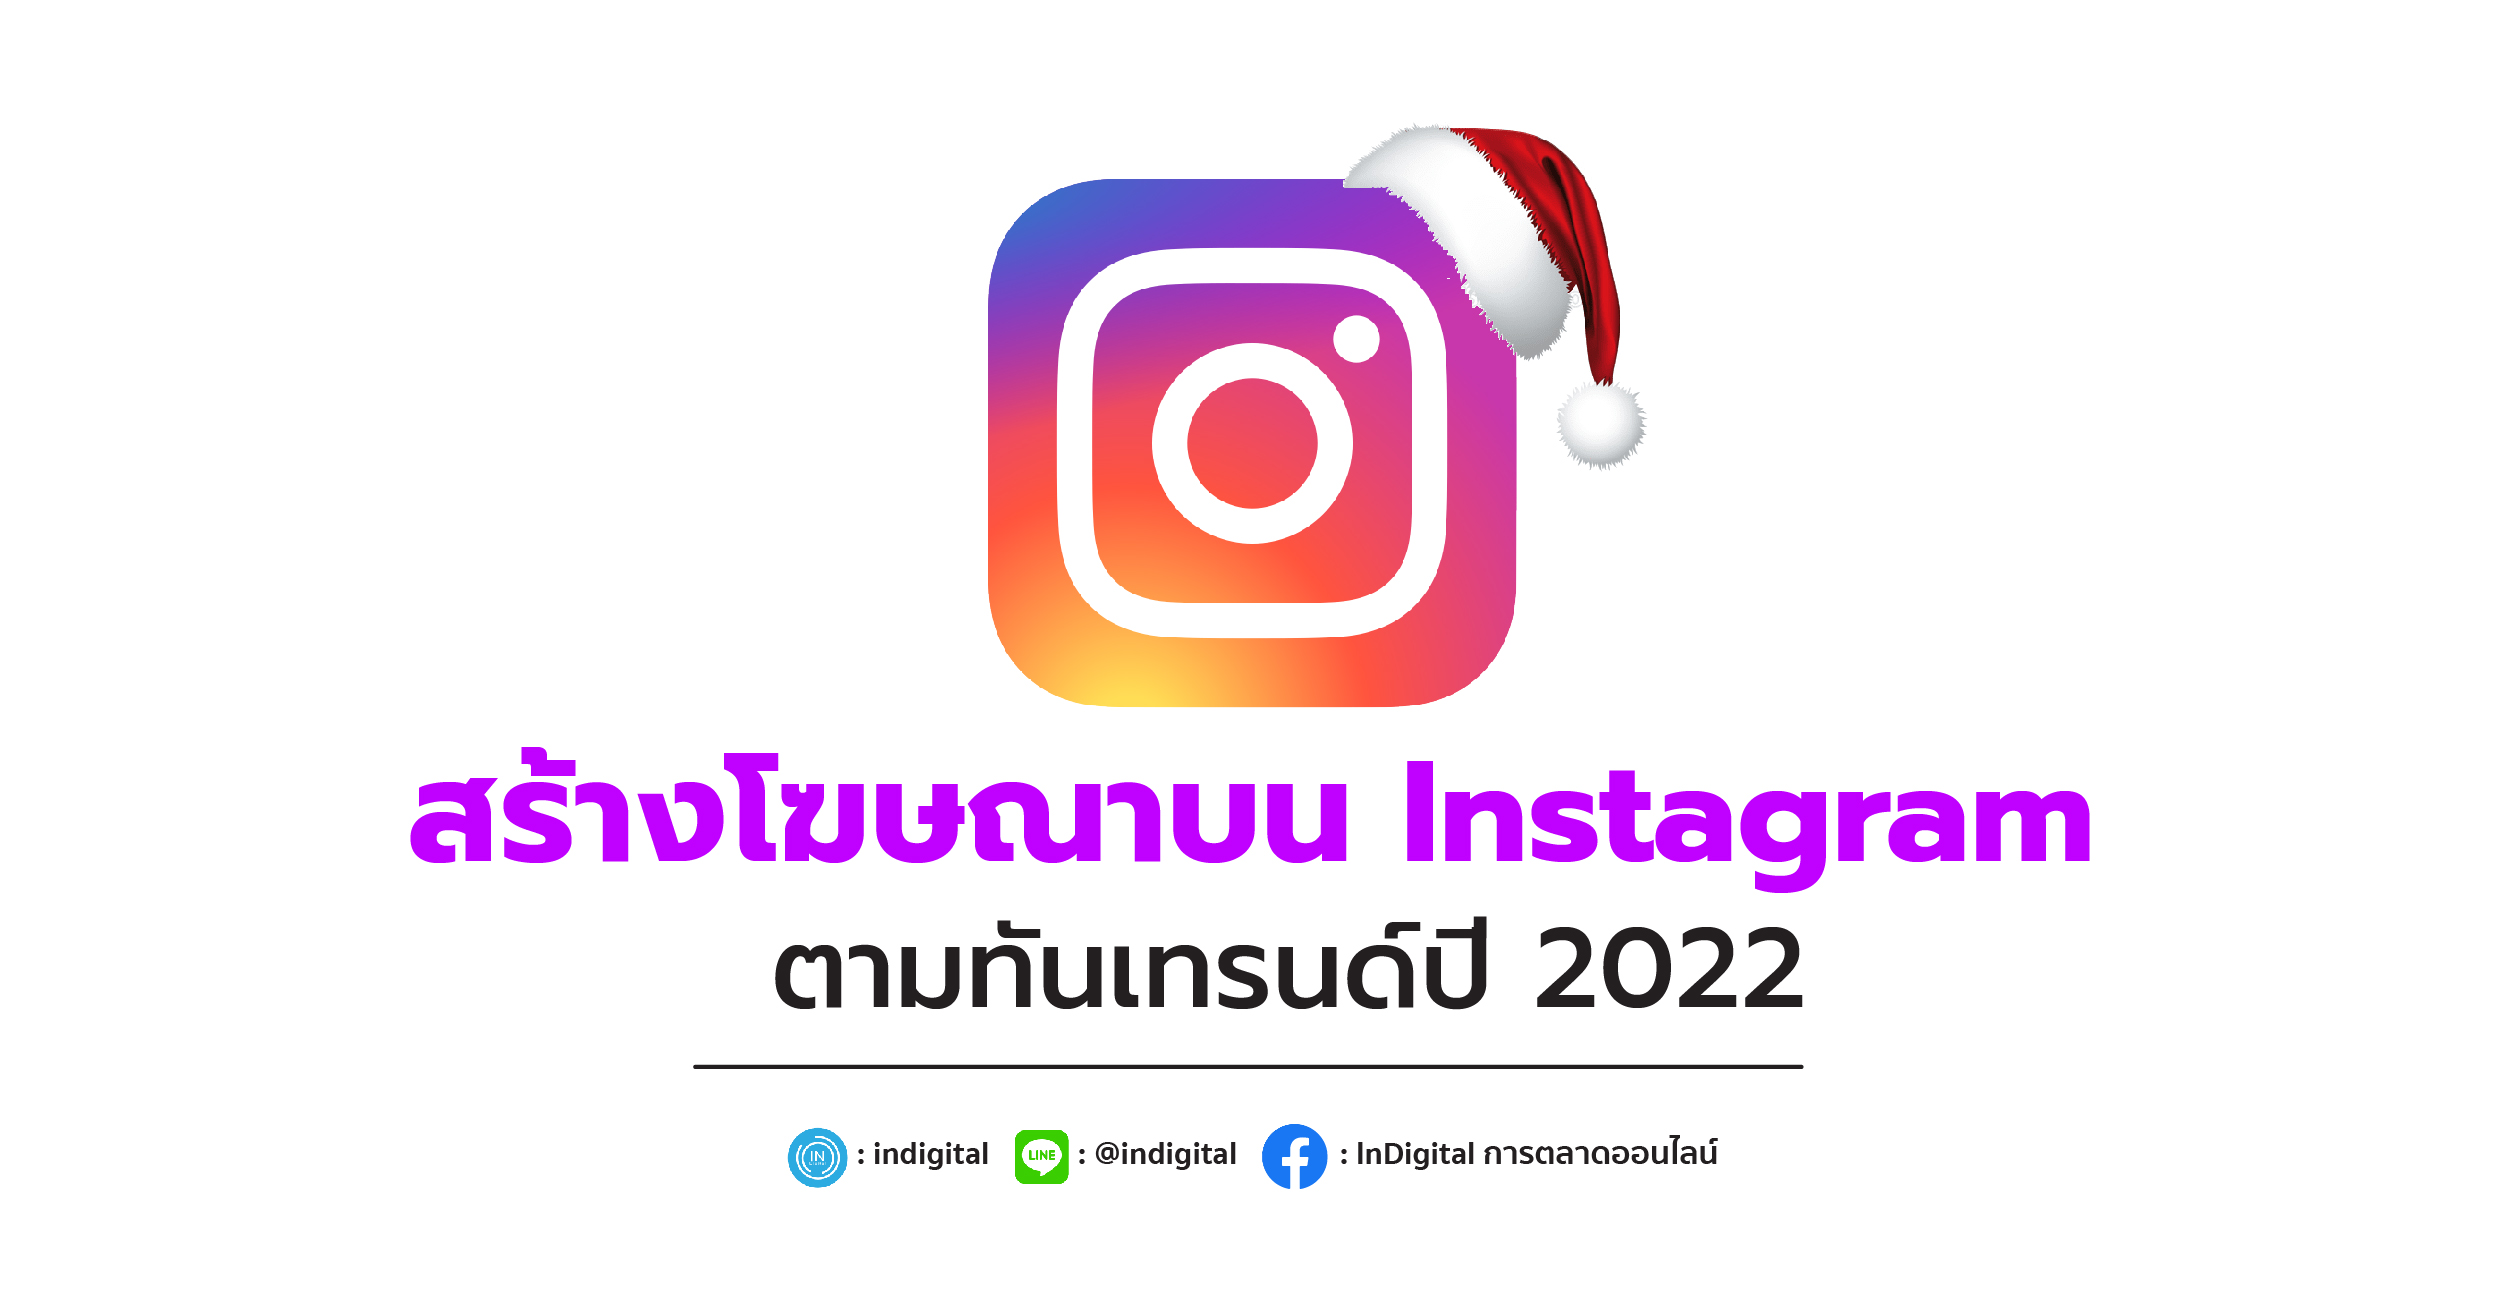 สร้างโฆษณาบน Instagram ตามทันเทรนด์ปี 2022